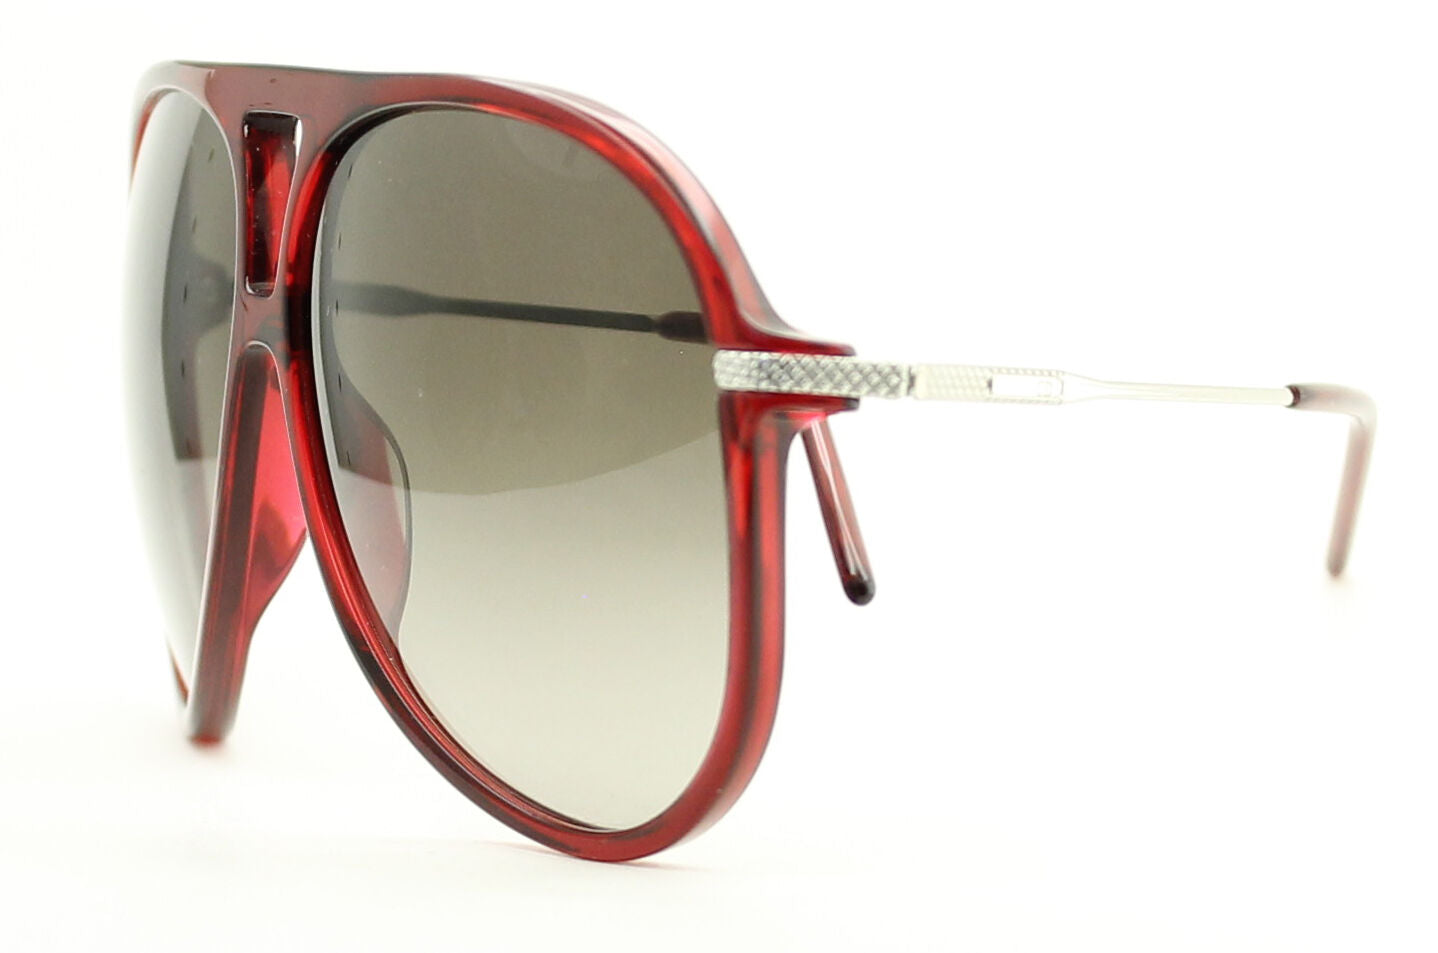 DIOR HOMME BLACK TIE 0129S col.SXP 135 Sunglasses BNIB Brand New in Case - ITALY